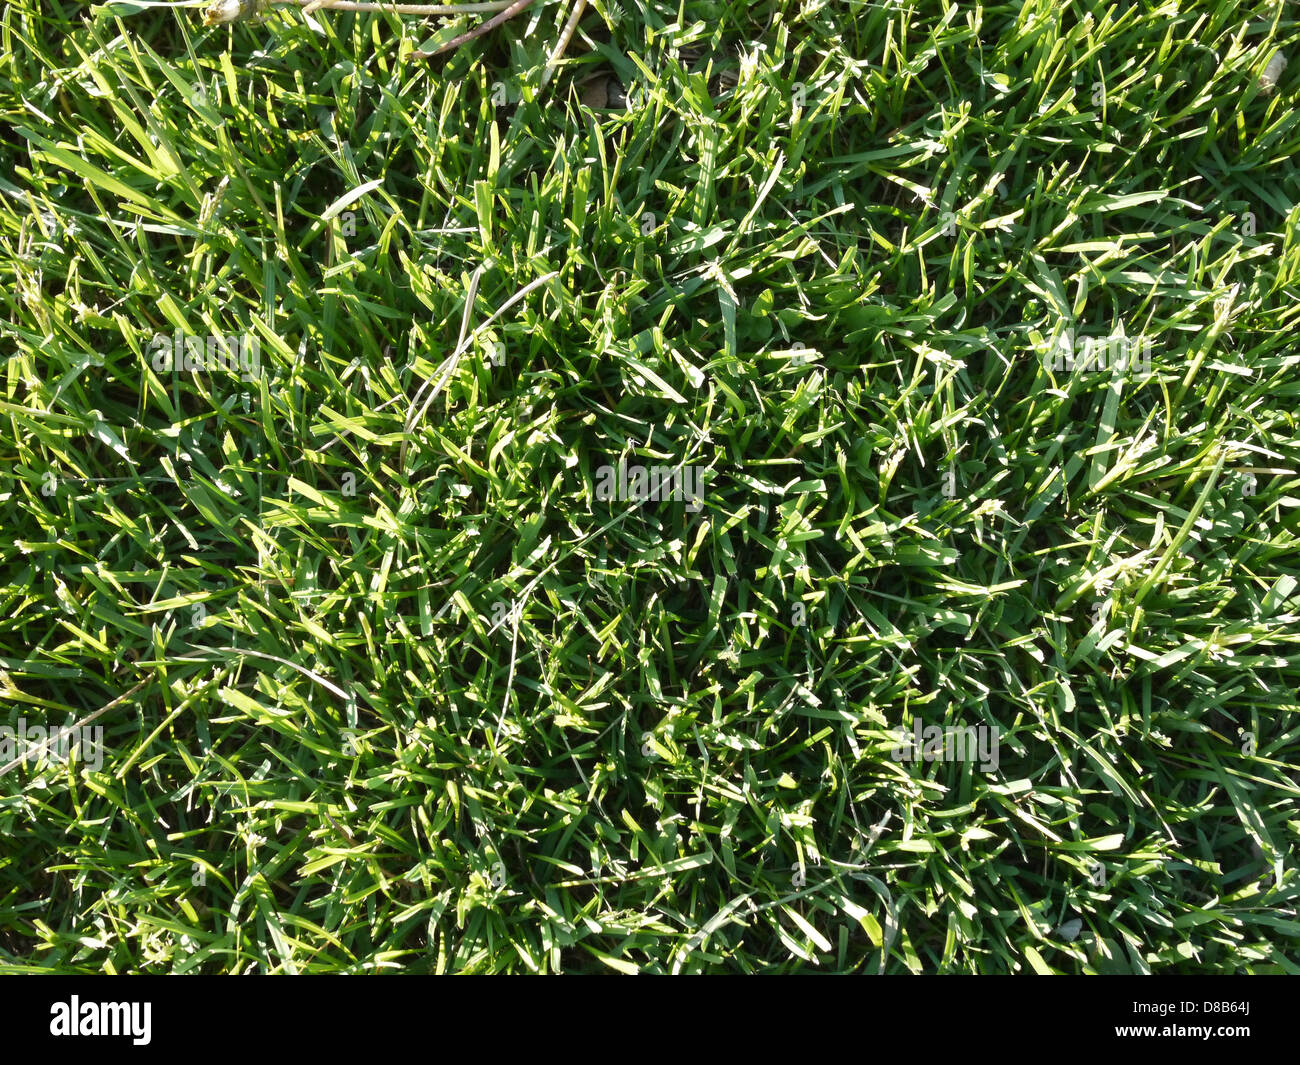 La hierba verde césped de verano saludable Foto de stock